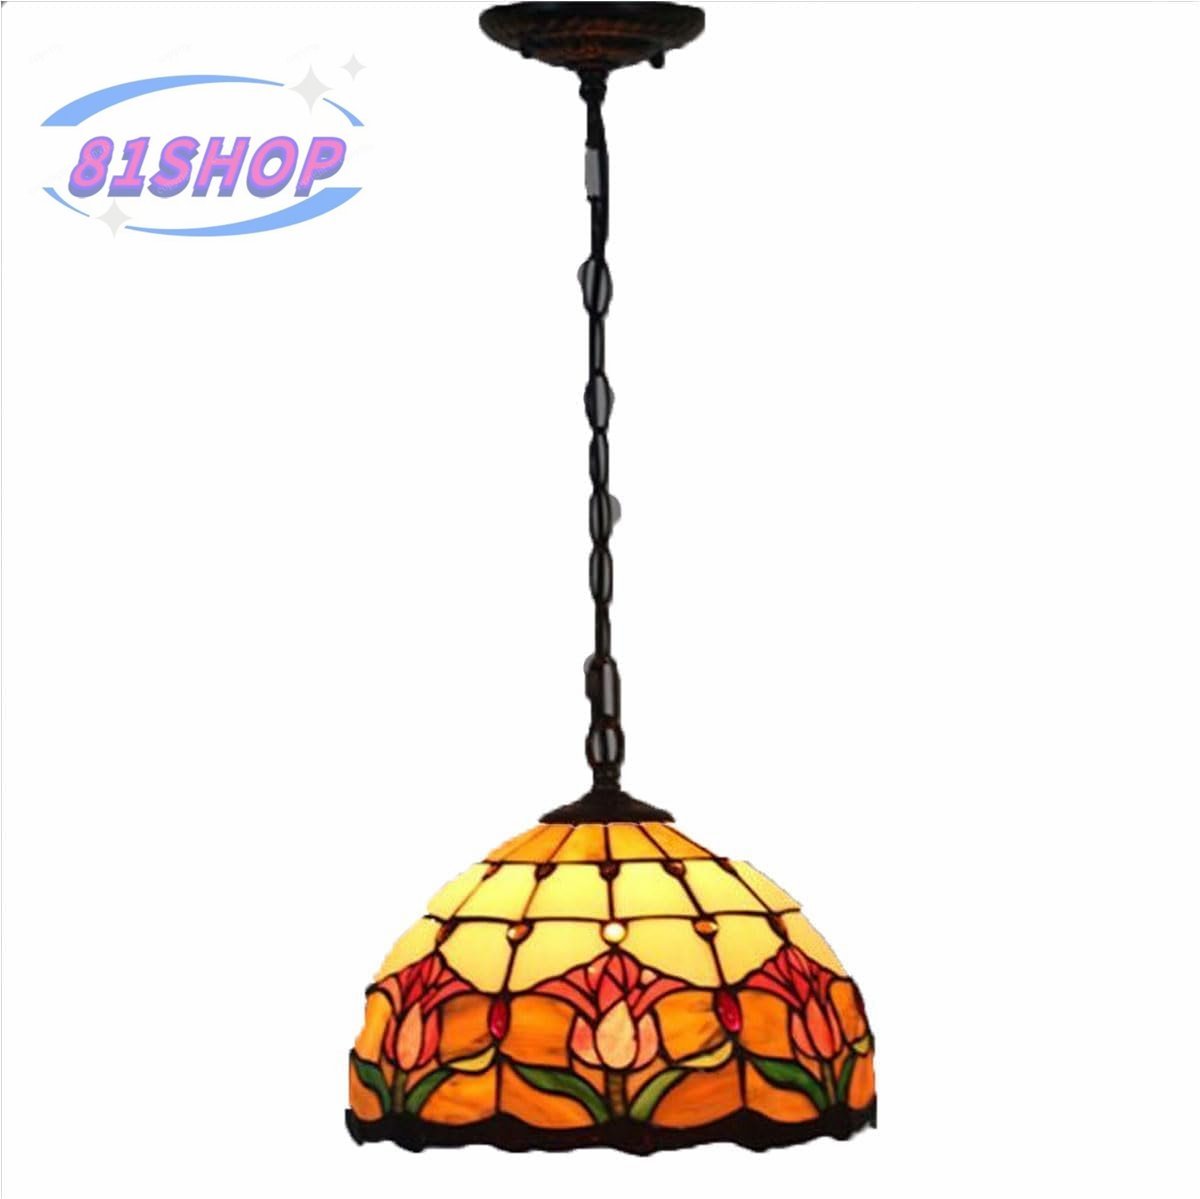 「81SHOP」シャンデリア ステンドランプ 天井吊り型ランプ ステンドグラス 花柄 ティファニー技法 照明